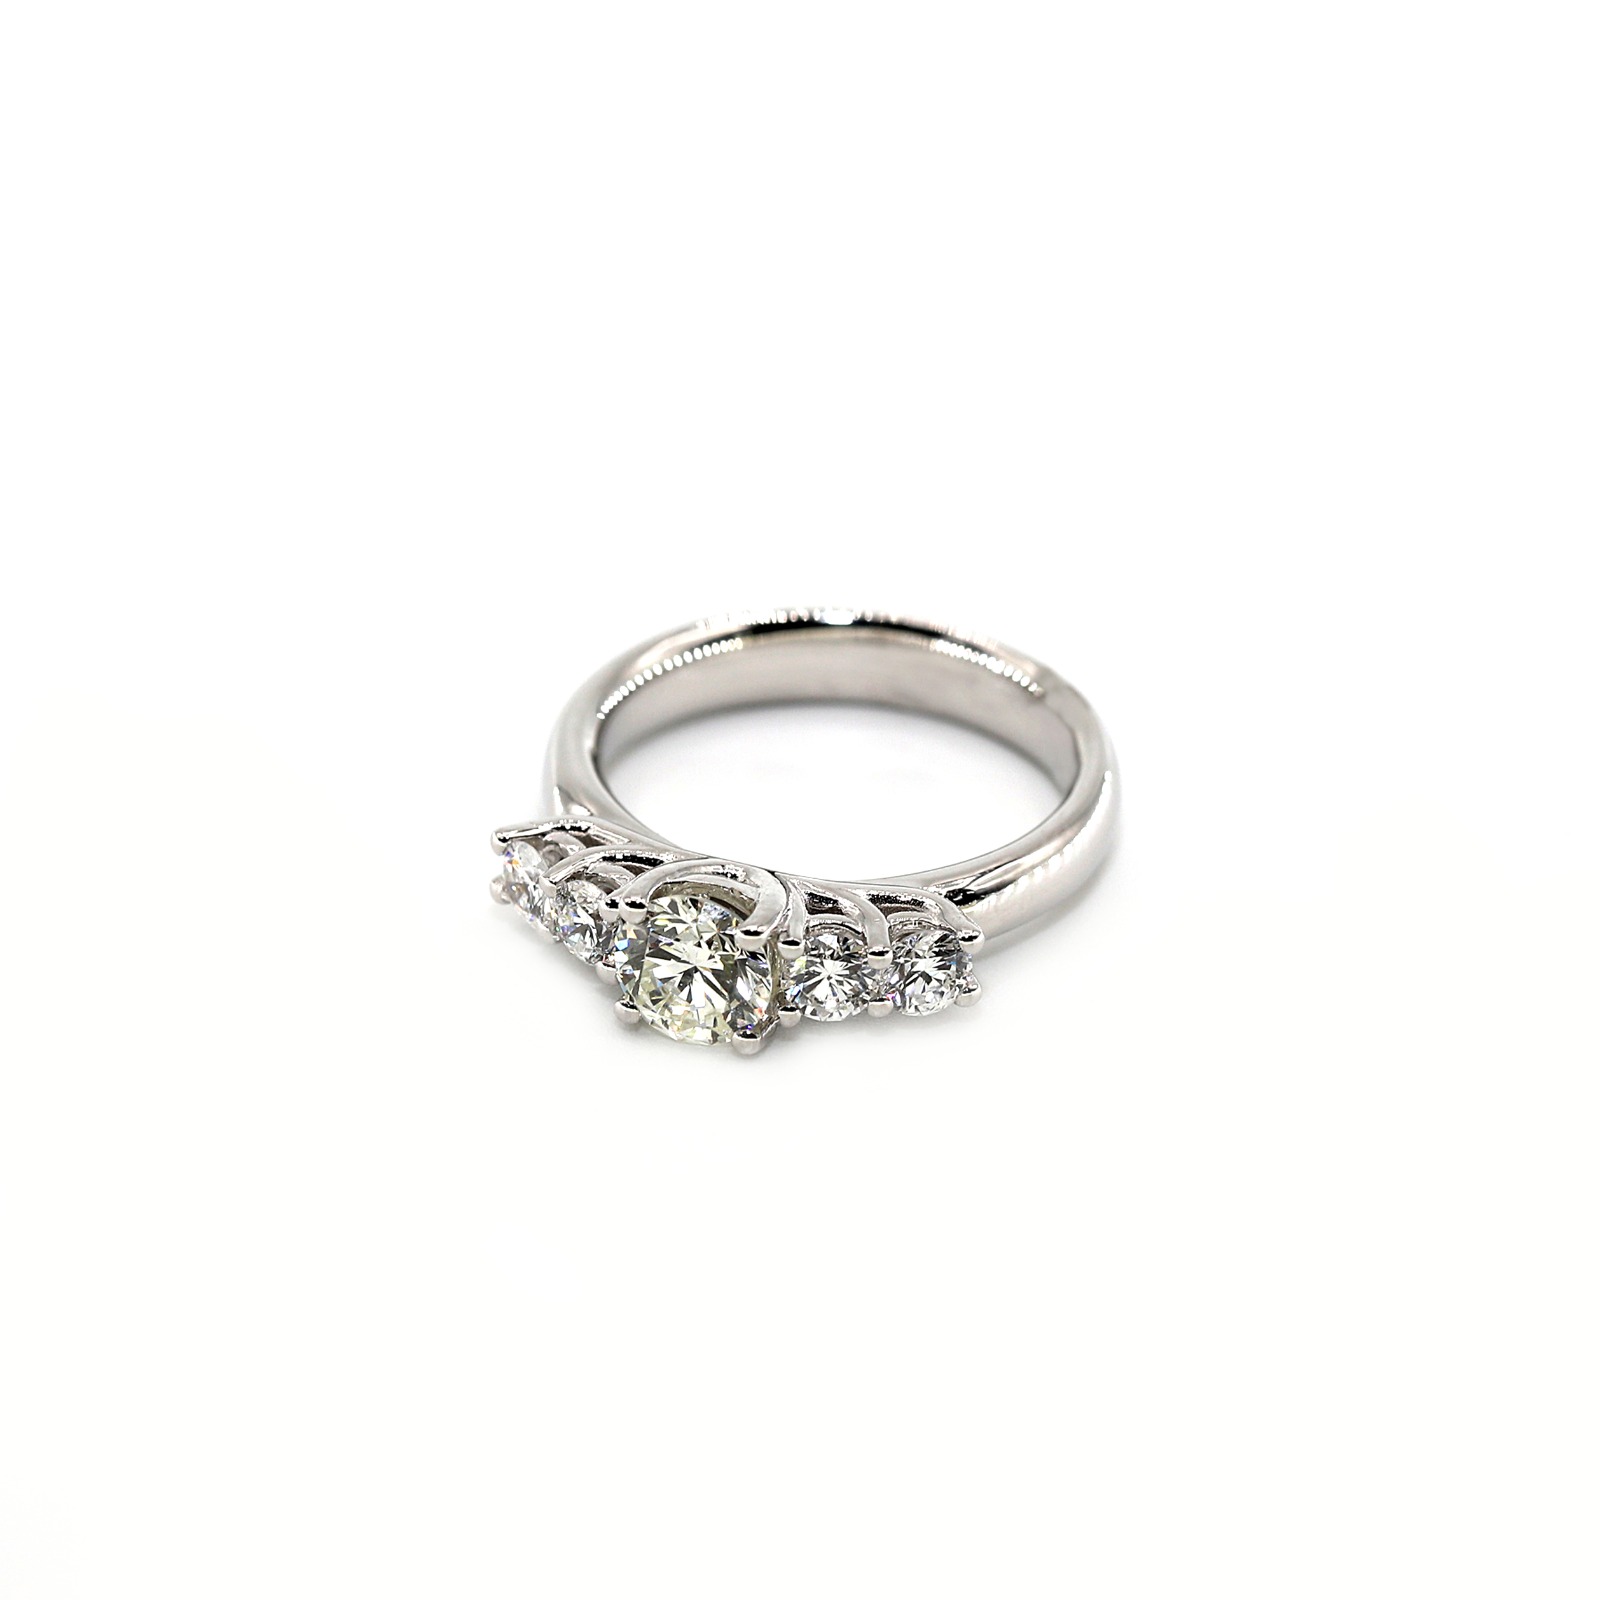 Specjalnie zaprojektowany pierścionek dla kobiet z 18-karatowego białego złota i diamentów - oferta dzienna przez GoldenEyeJewellery.net